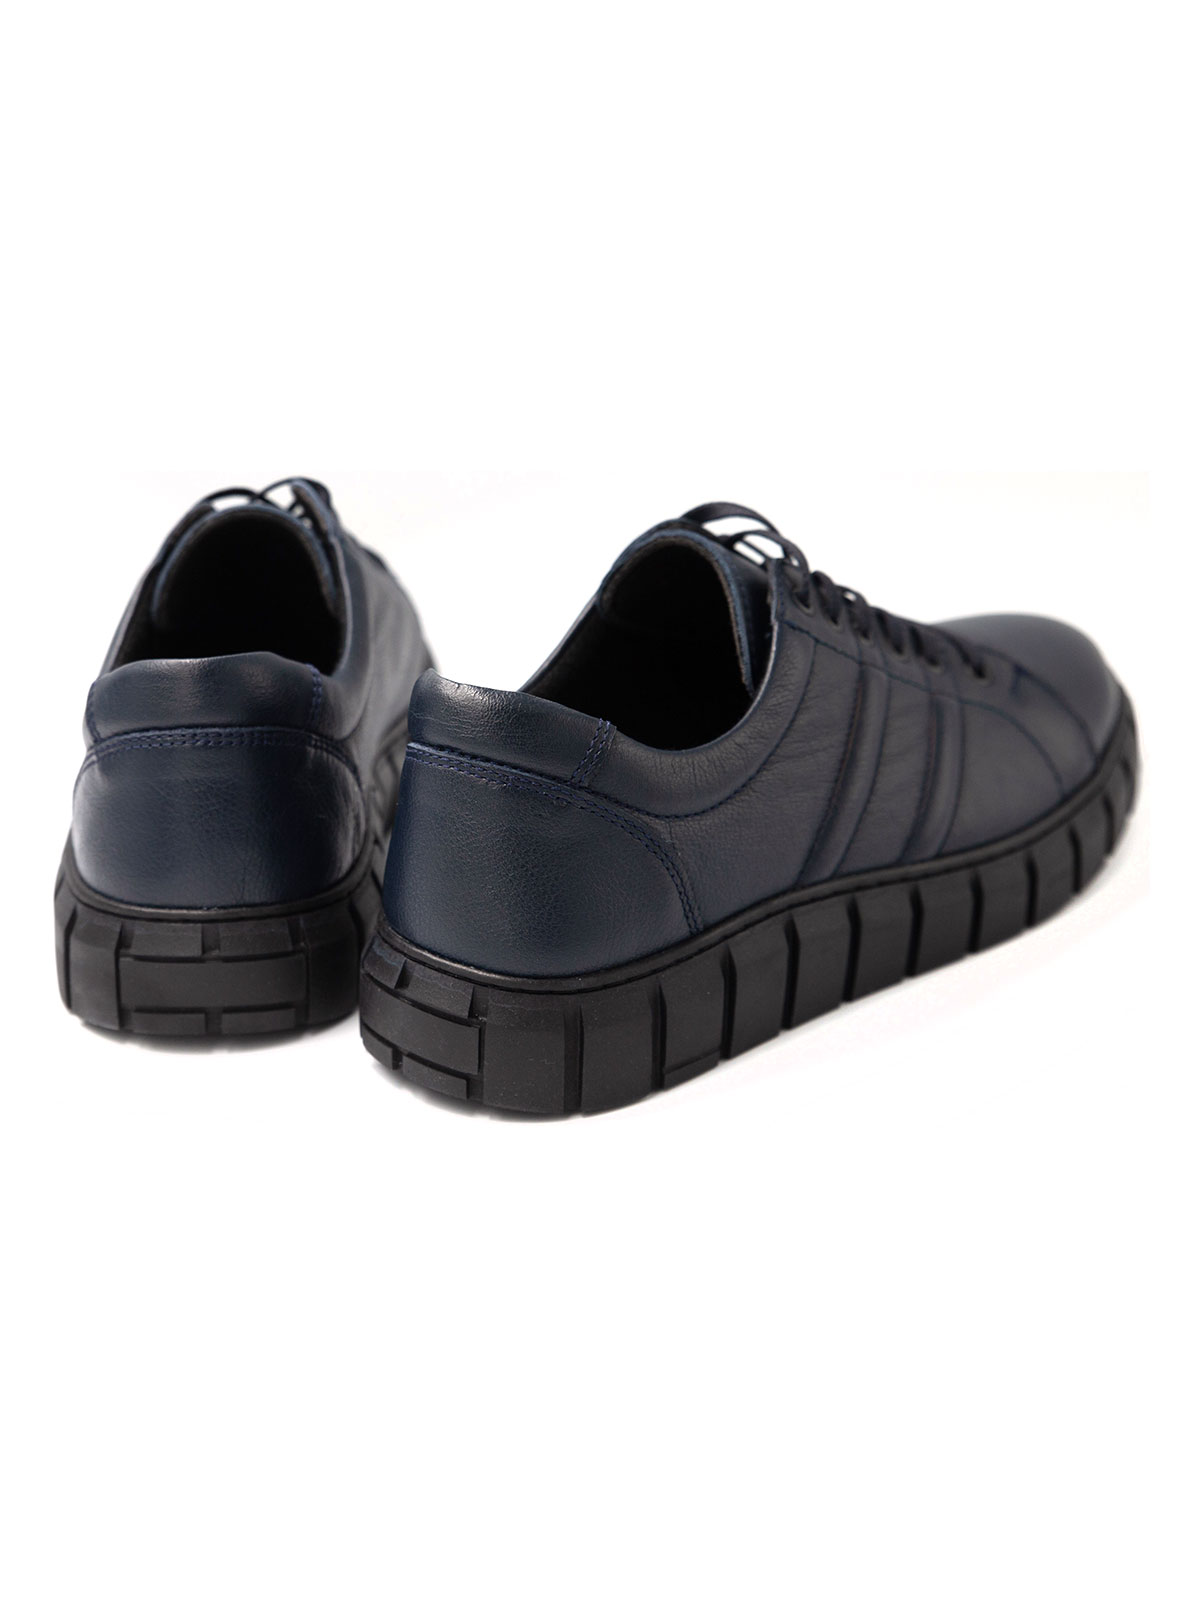 Σκούρα μπλε αθλητικά δερμάτινα παπούτσια - 81098 - € 41.62 img4